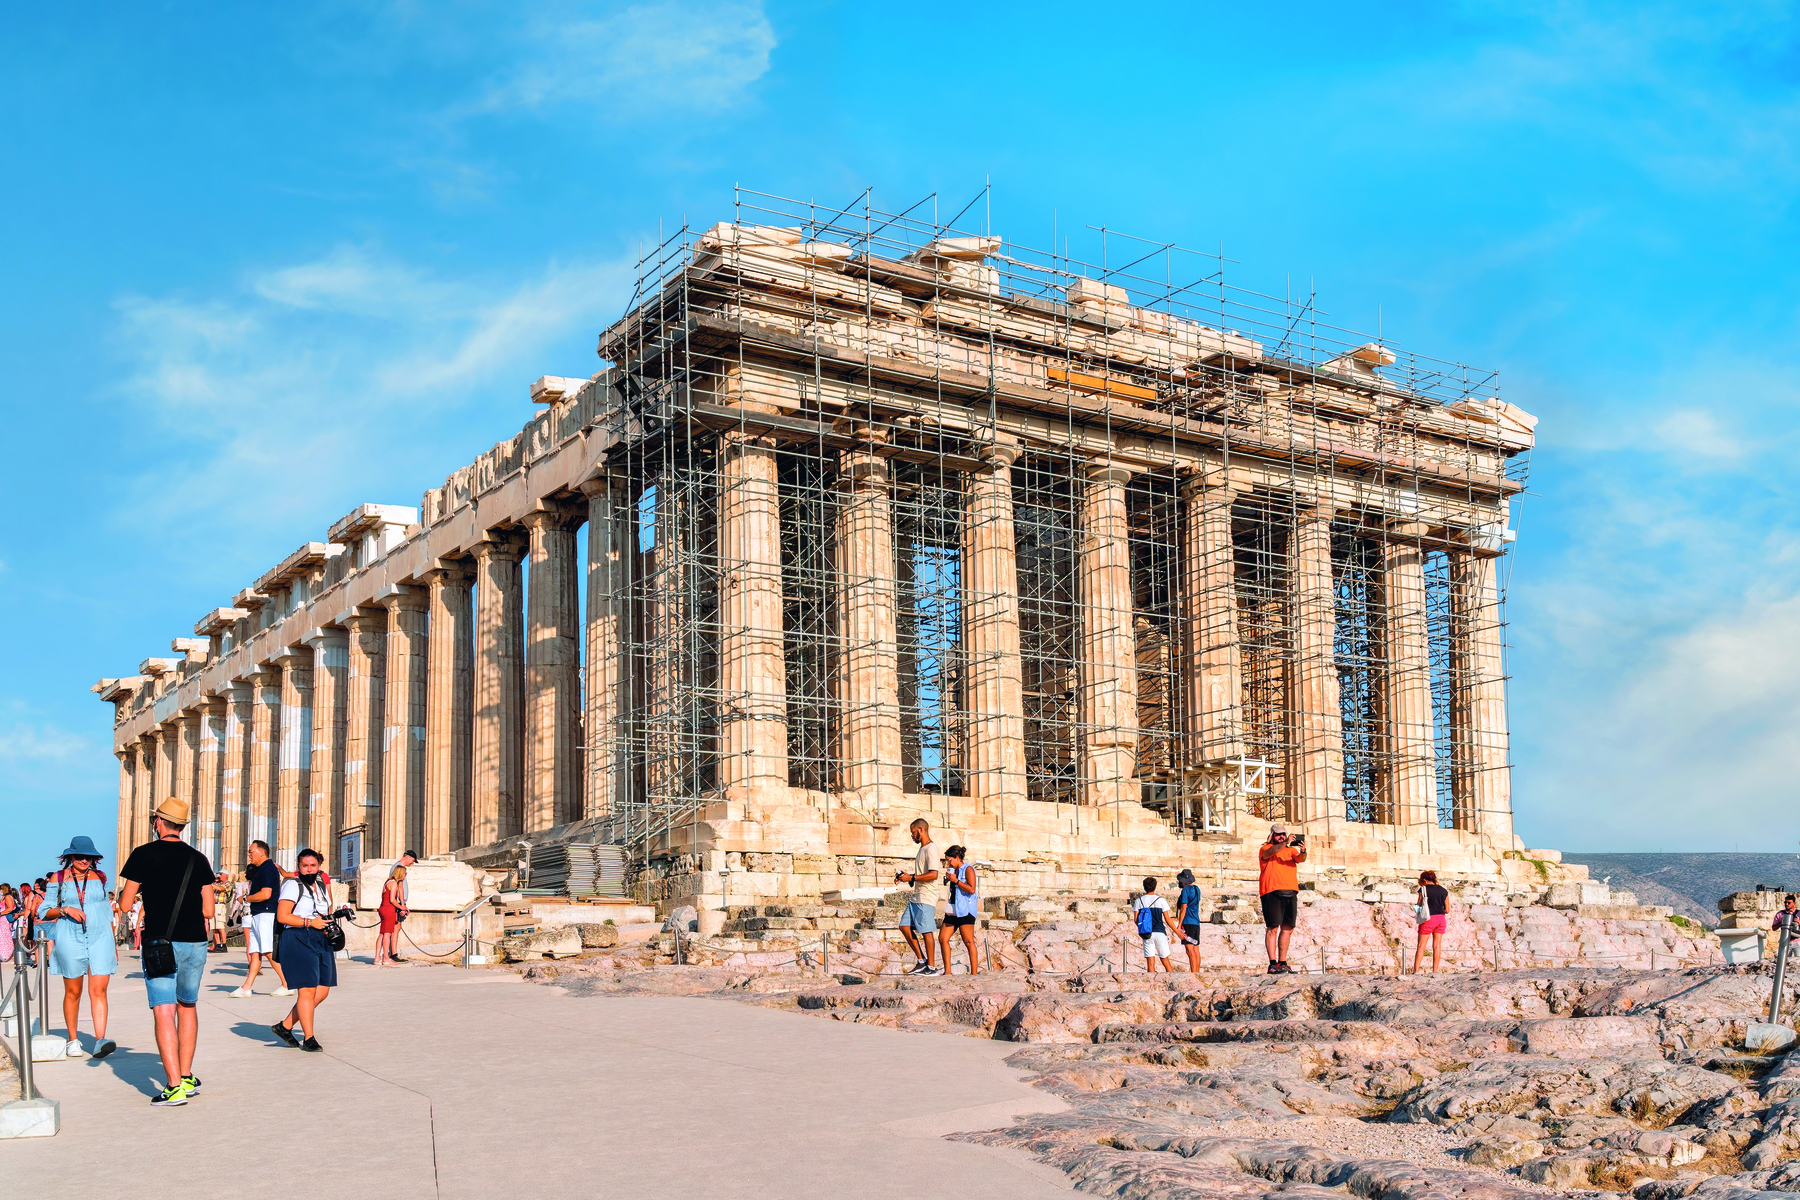 Fotografia. Vista de um templo grego com colunas circulares por todo o perímetro da construção. Ao redor, ruínas de pedras e pessoas transitando.